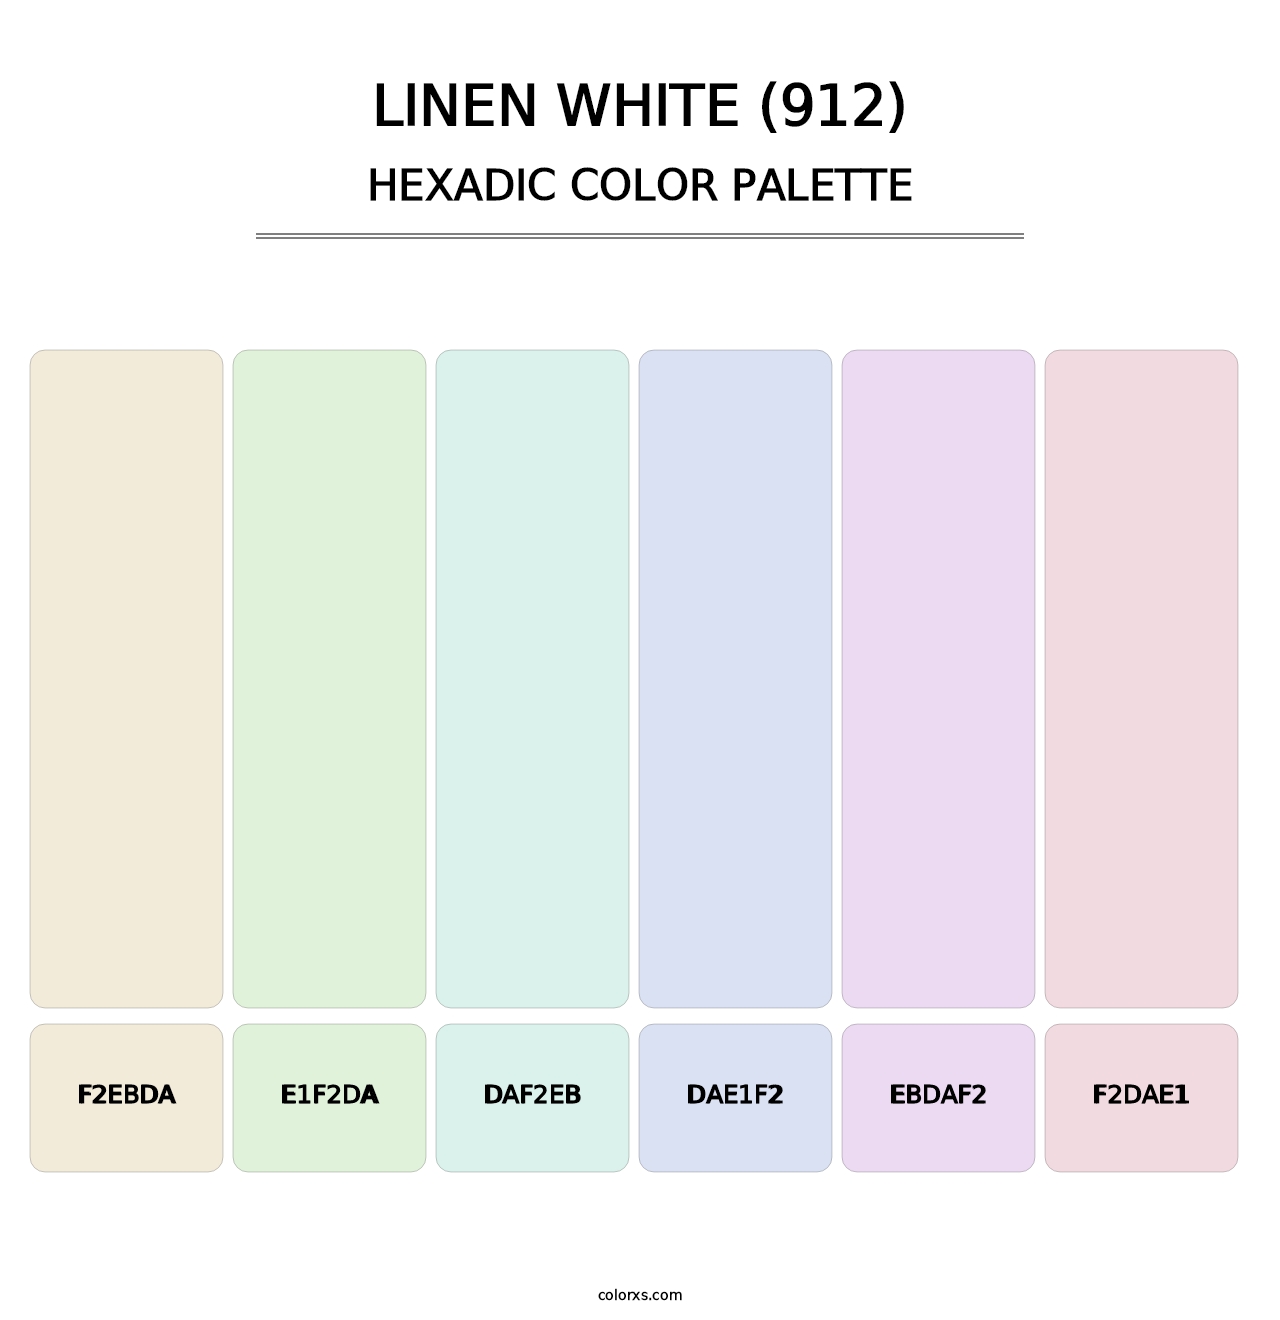 Linen White (912) - Hexadic Color Palette